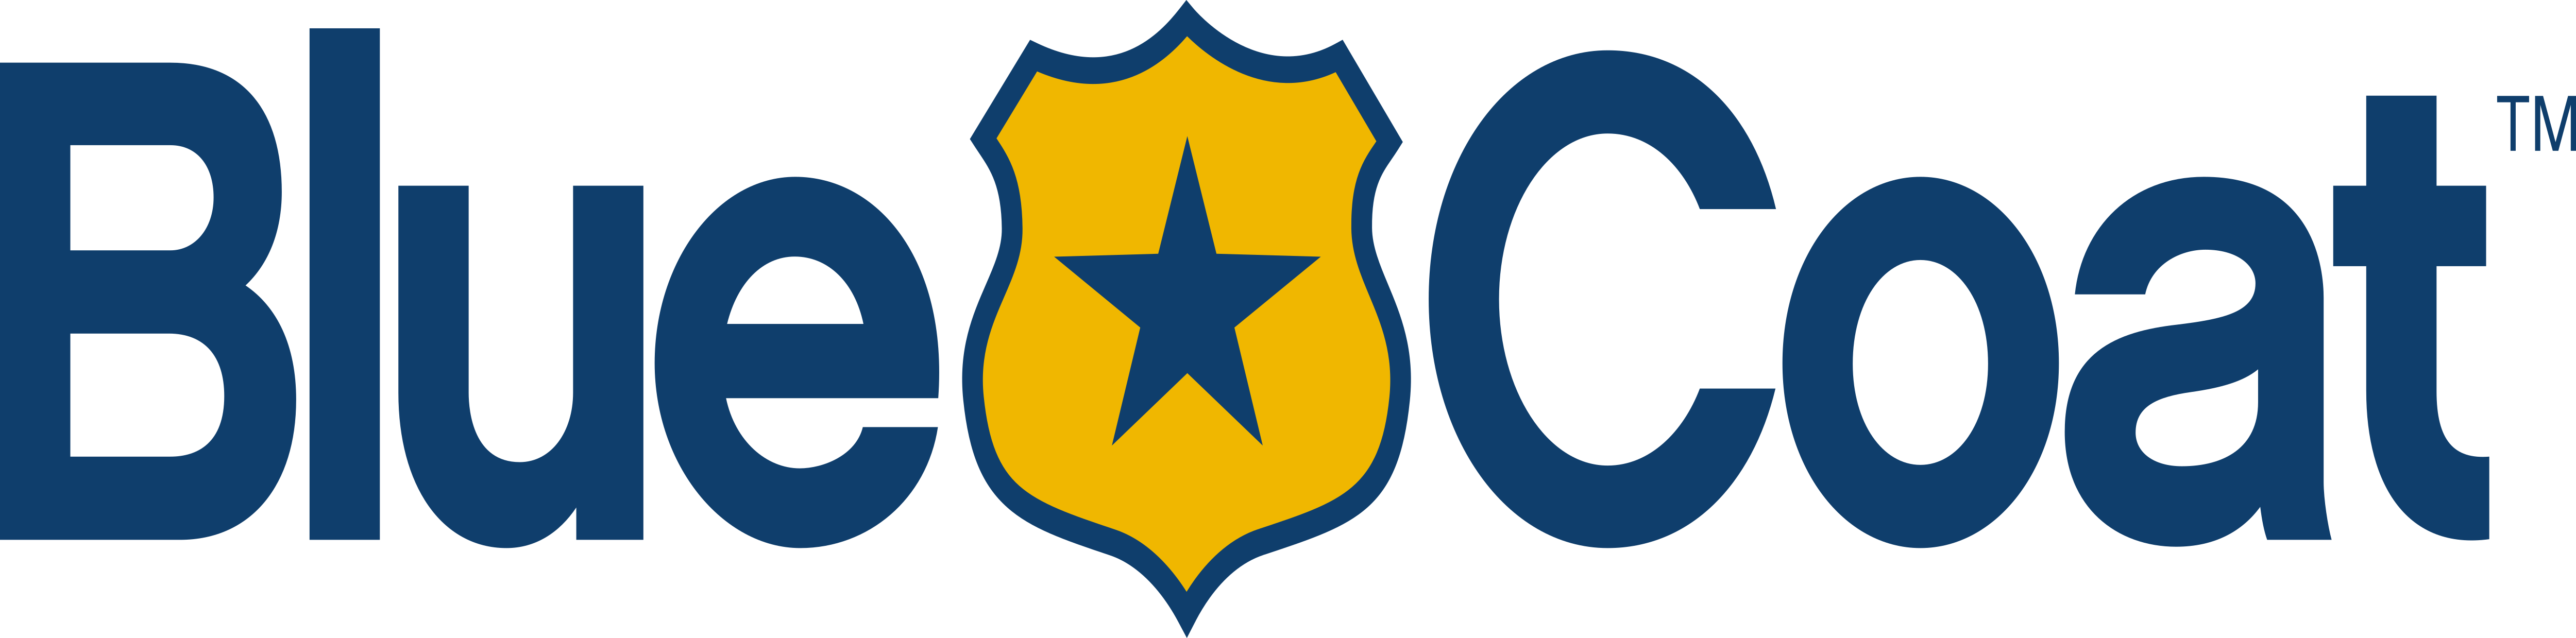 Bluecoats Logo